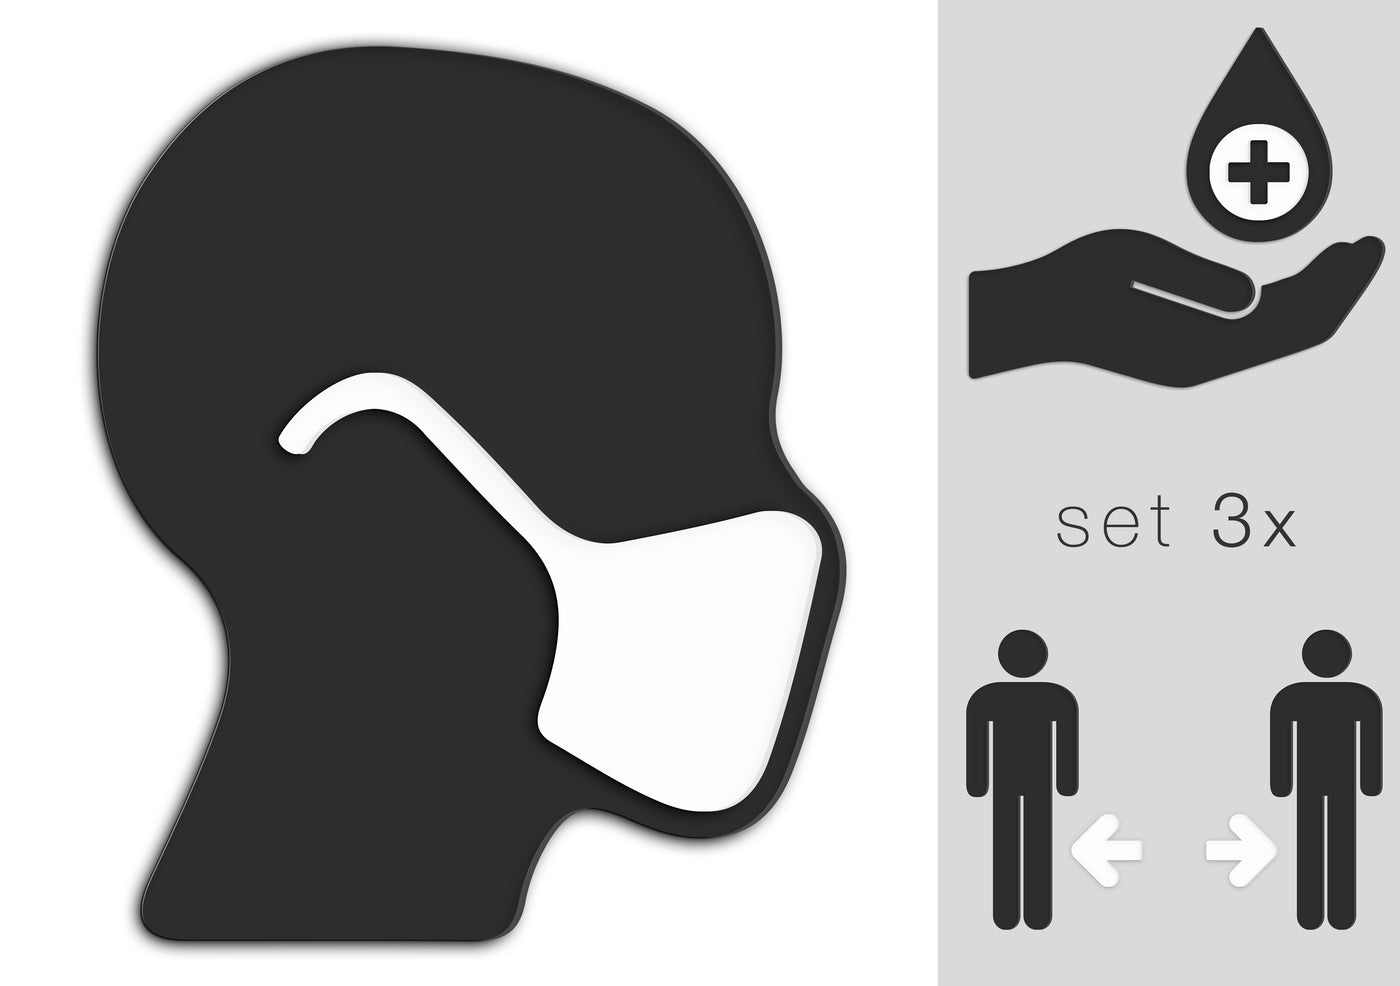 Símbolos Precauciones de seguridad e higiene, Set 3x - Usar máscara, lavarse las manos, respetar el distanciamiento social